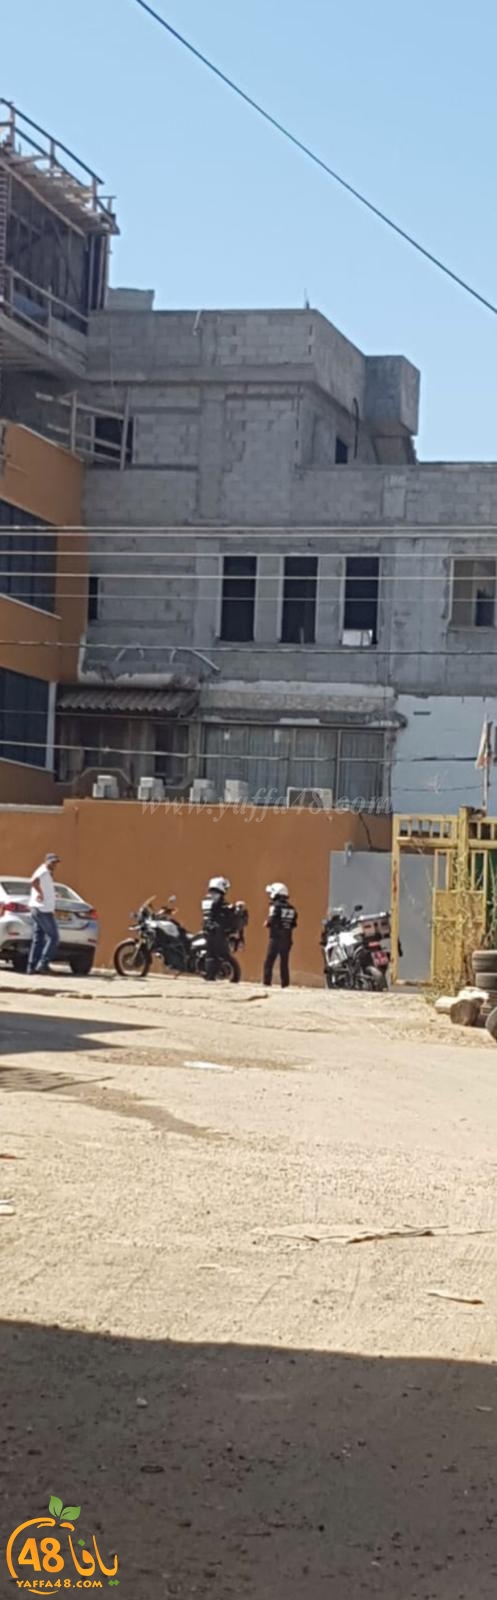 فيديو: ما حقيقة التحركات الشرطية في حي الجواريش بمدينة الرملة ؟!